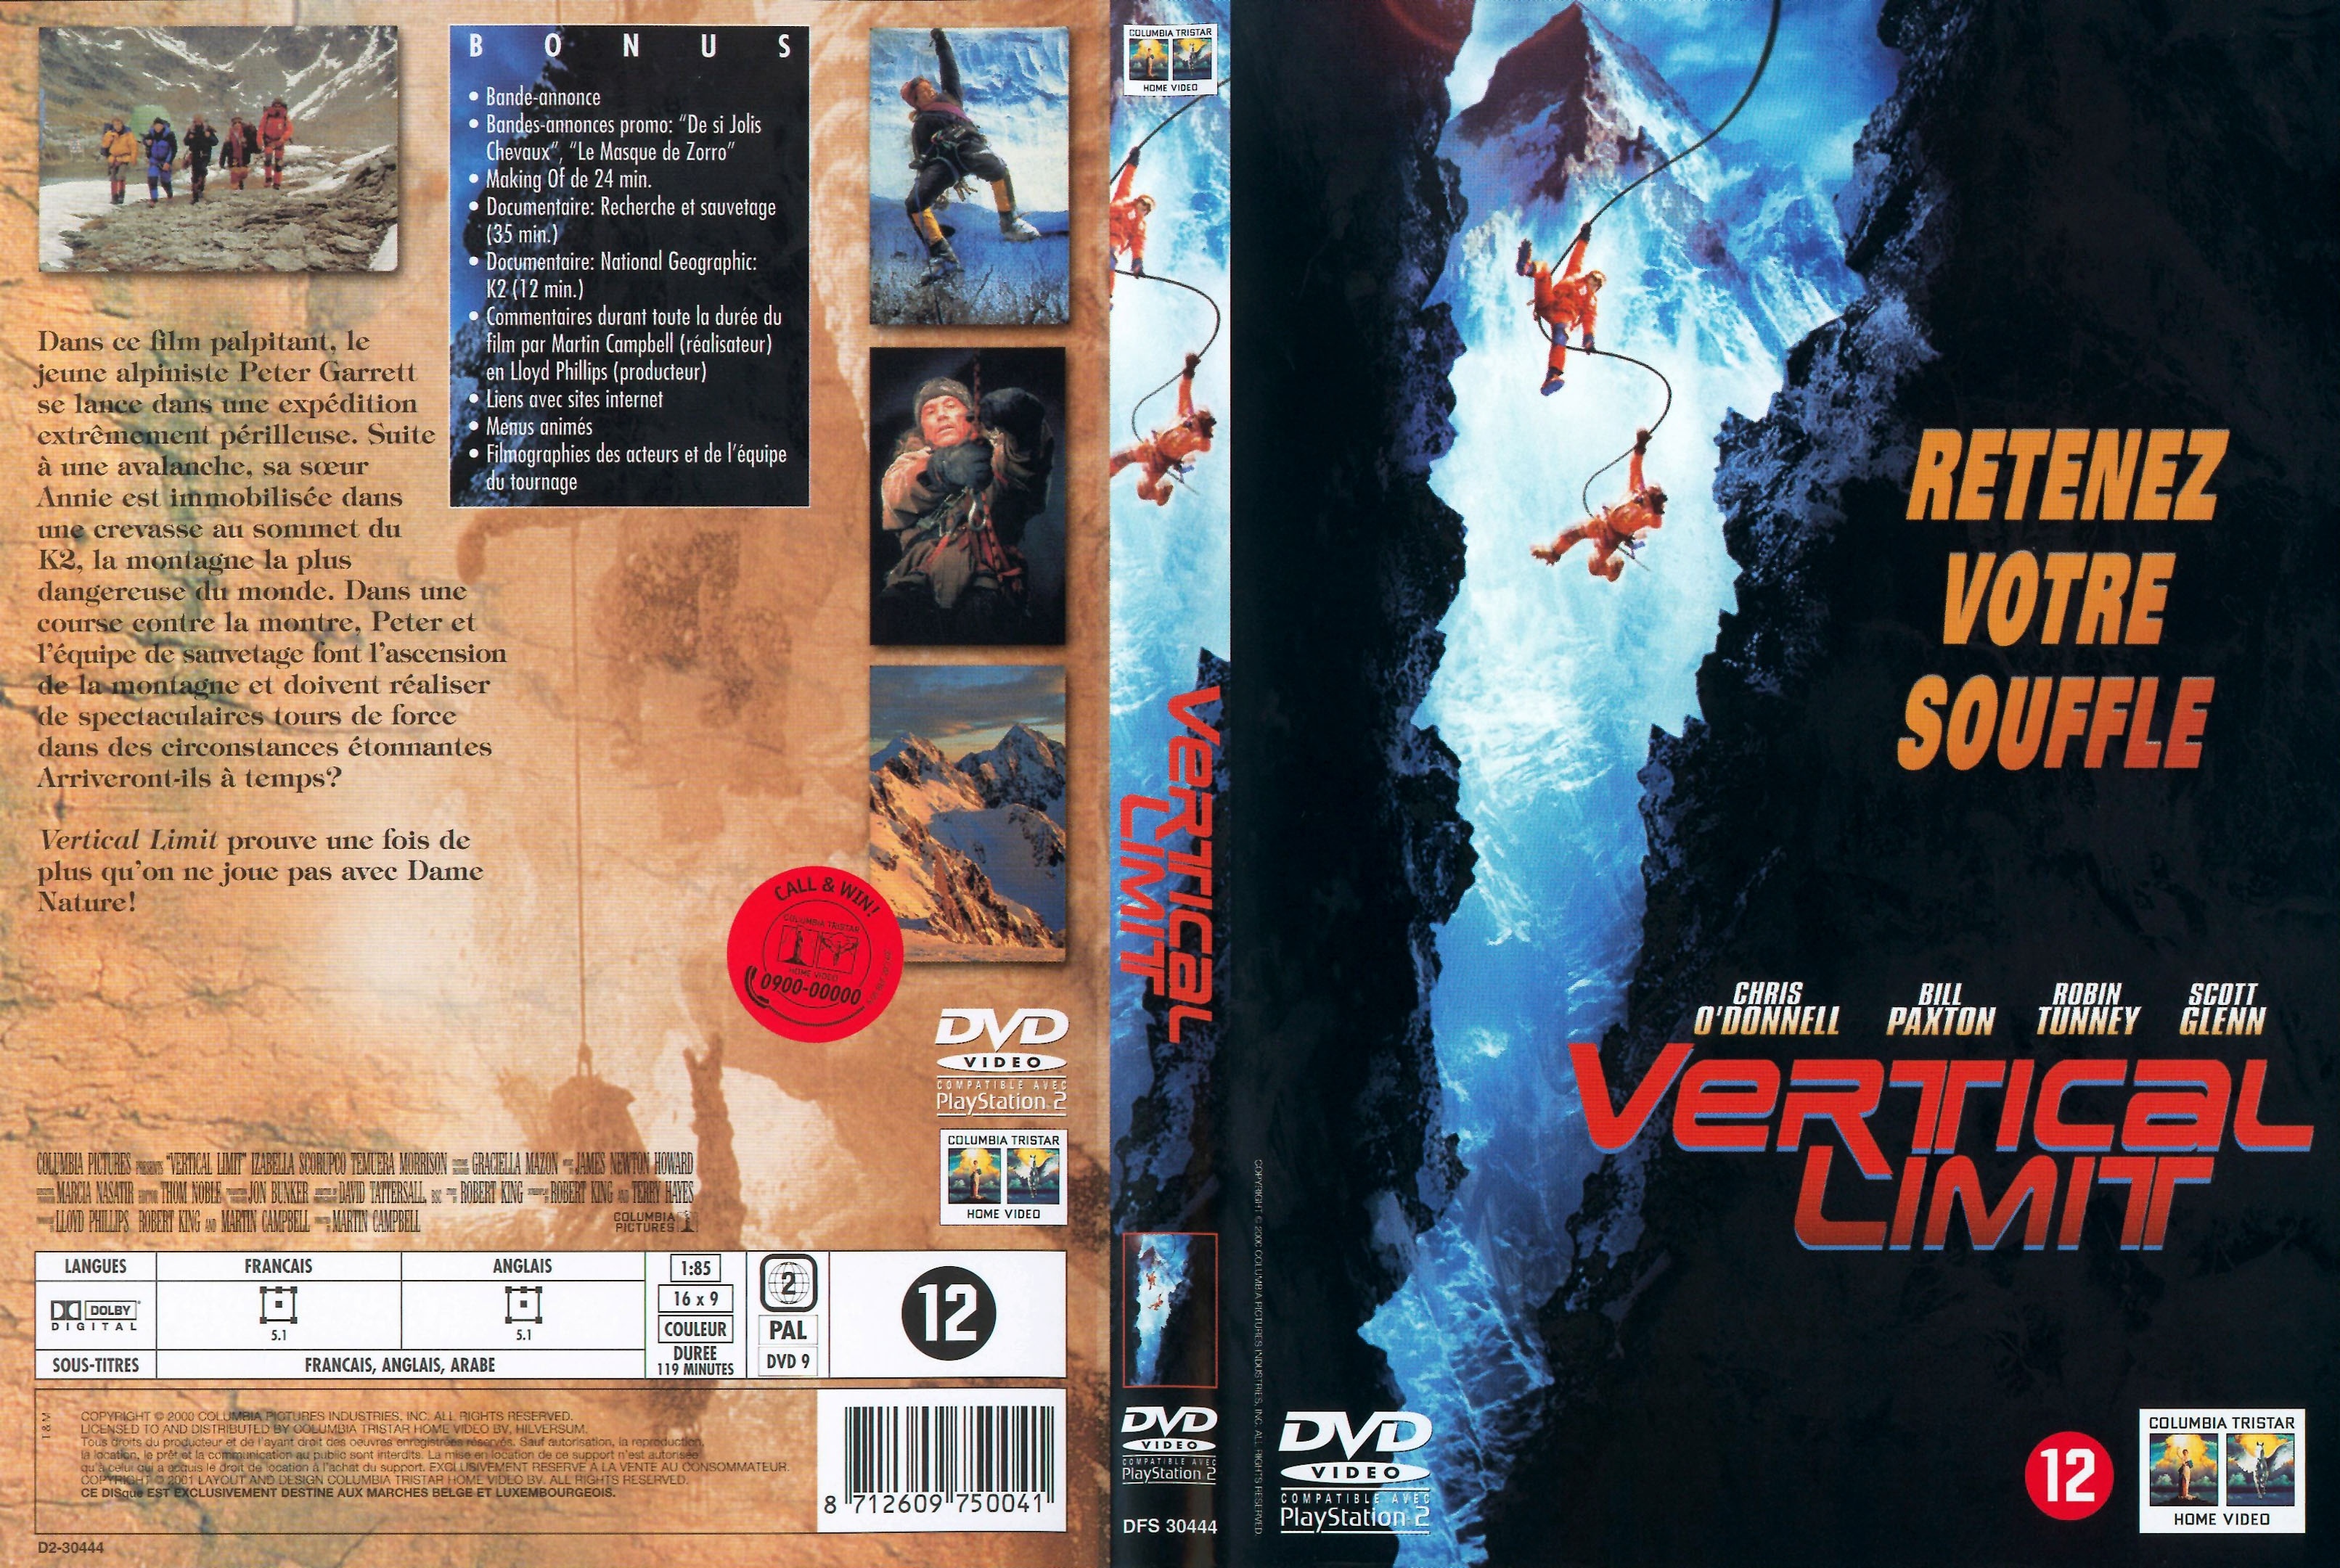 Jaquette DVD Vertical limit v2